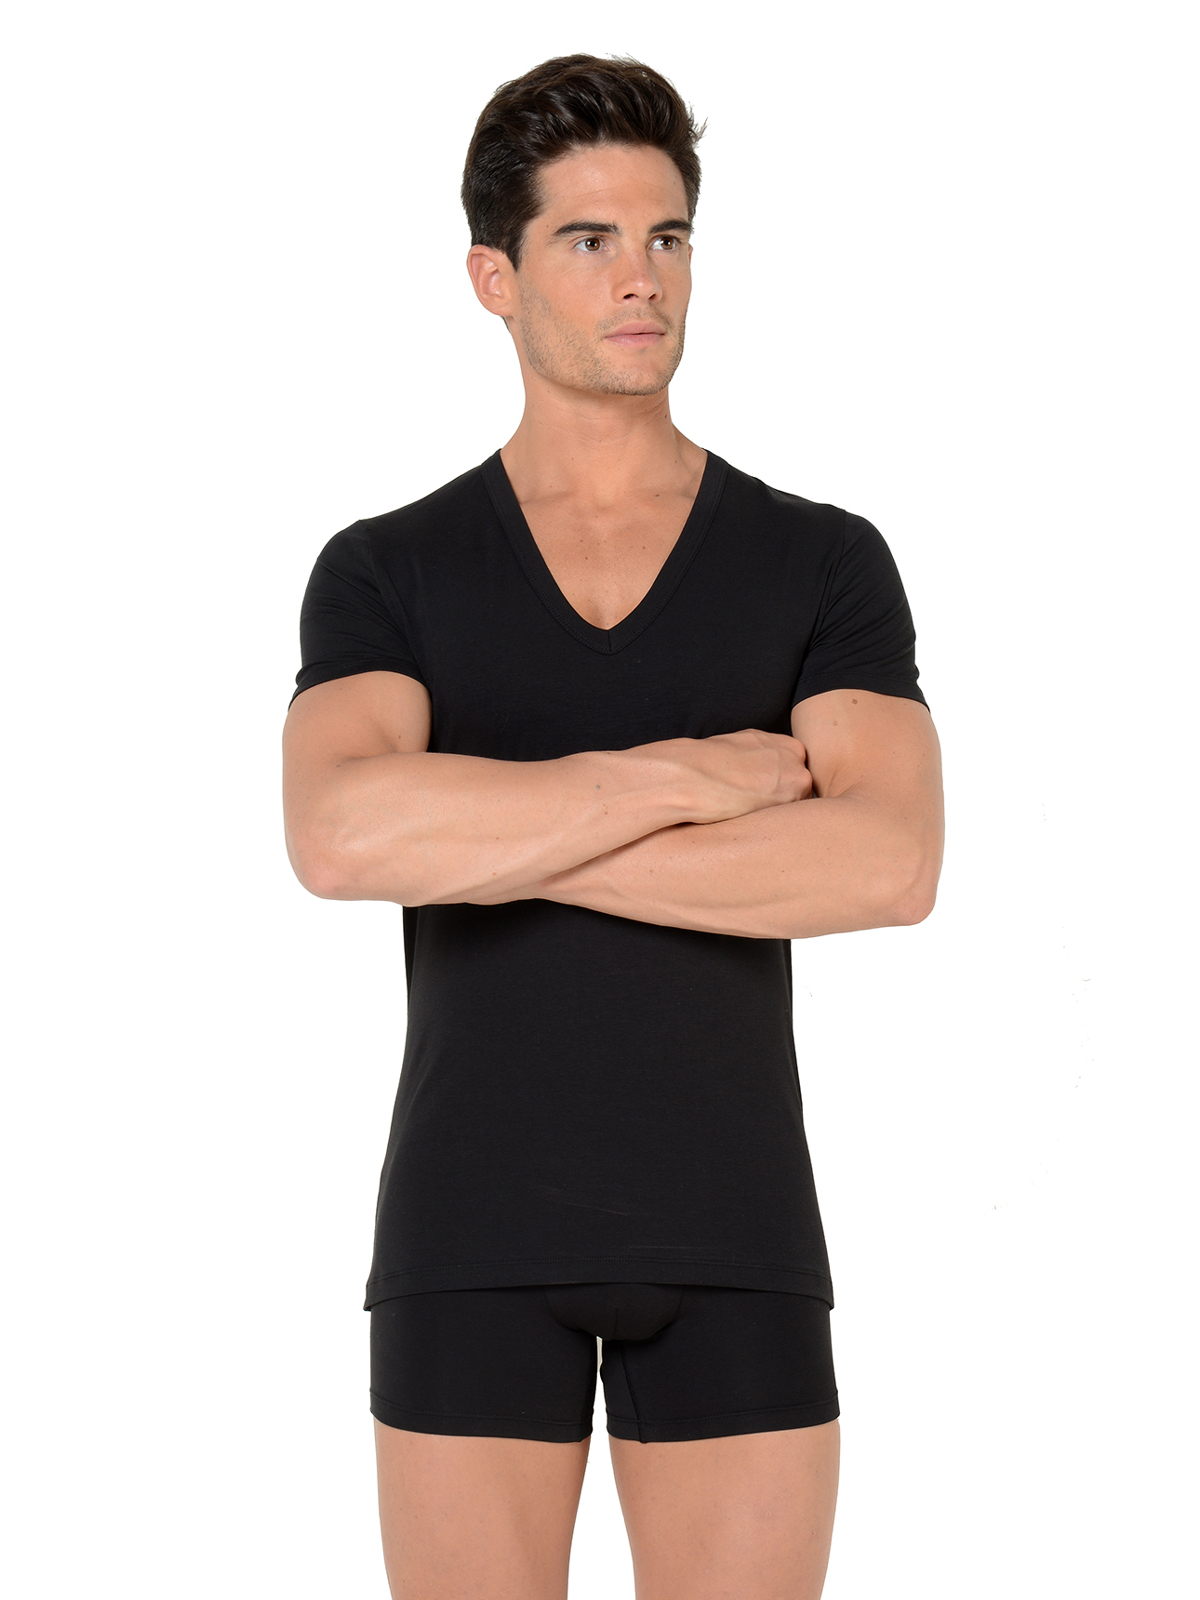 футболка мужская HOM 40-1331 чёрная